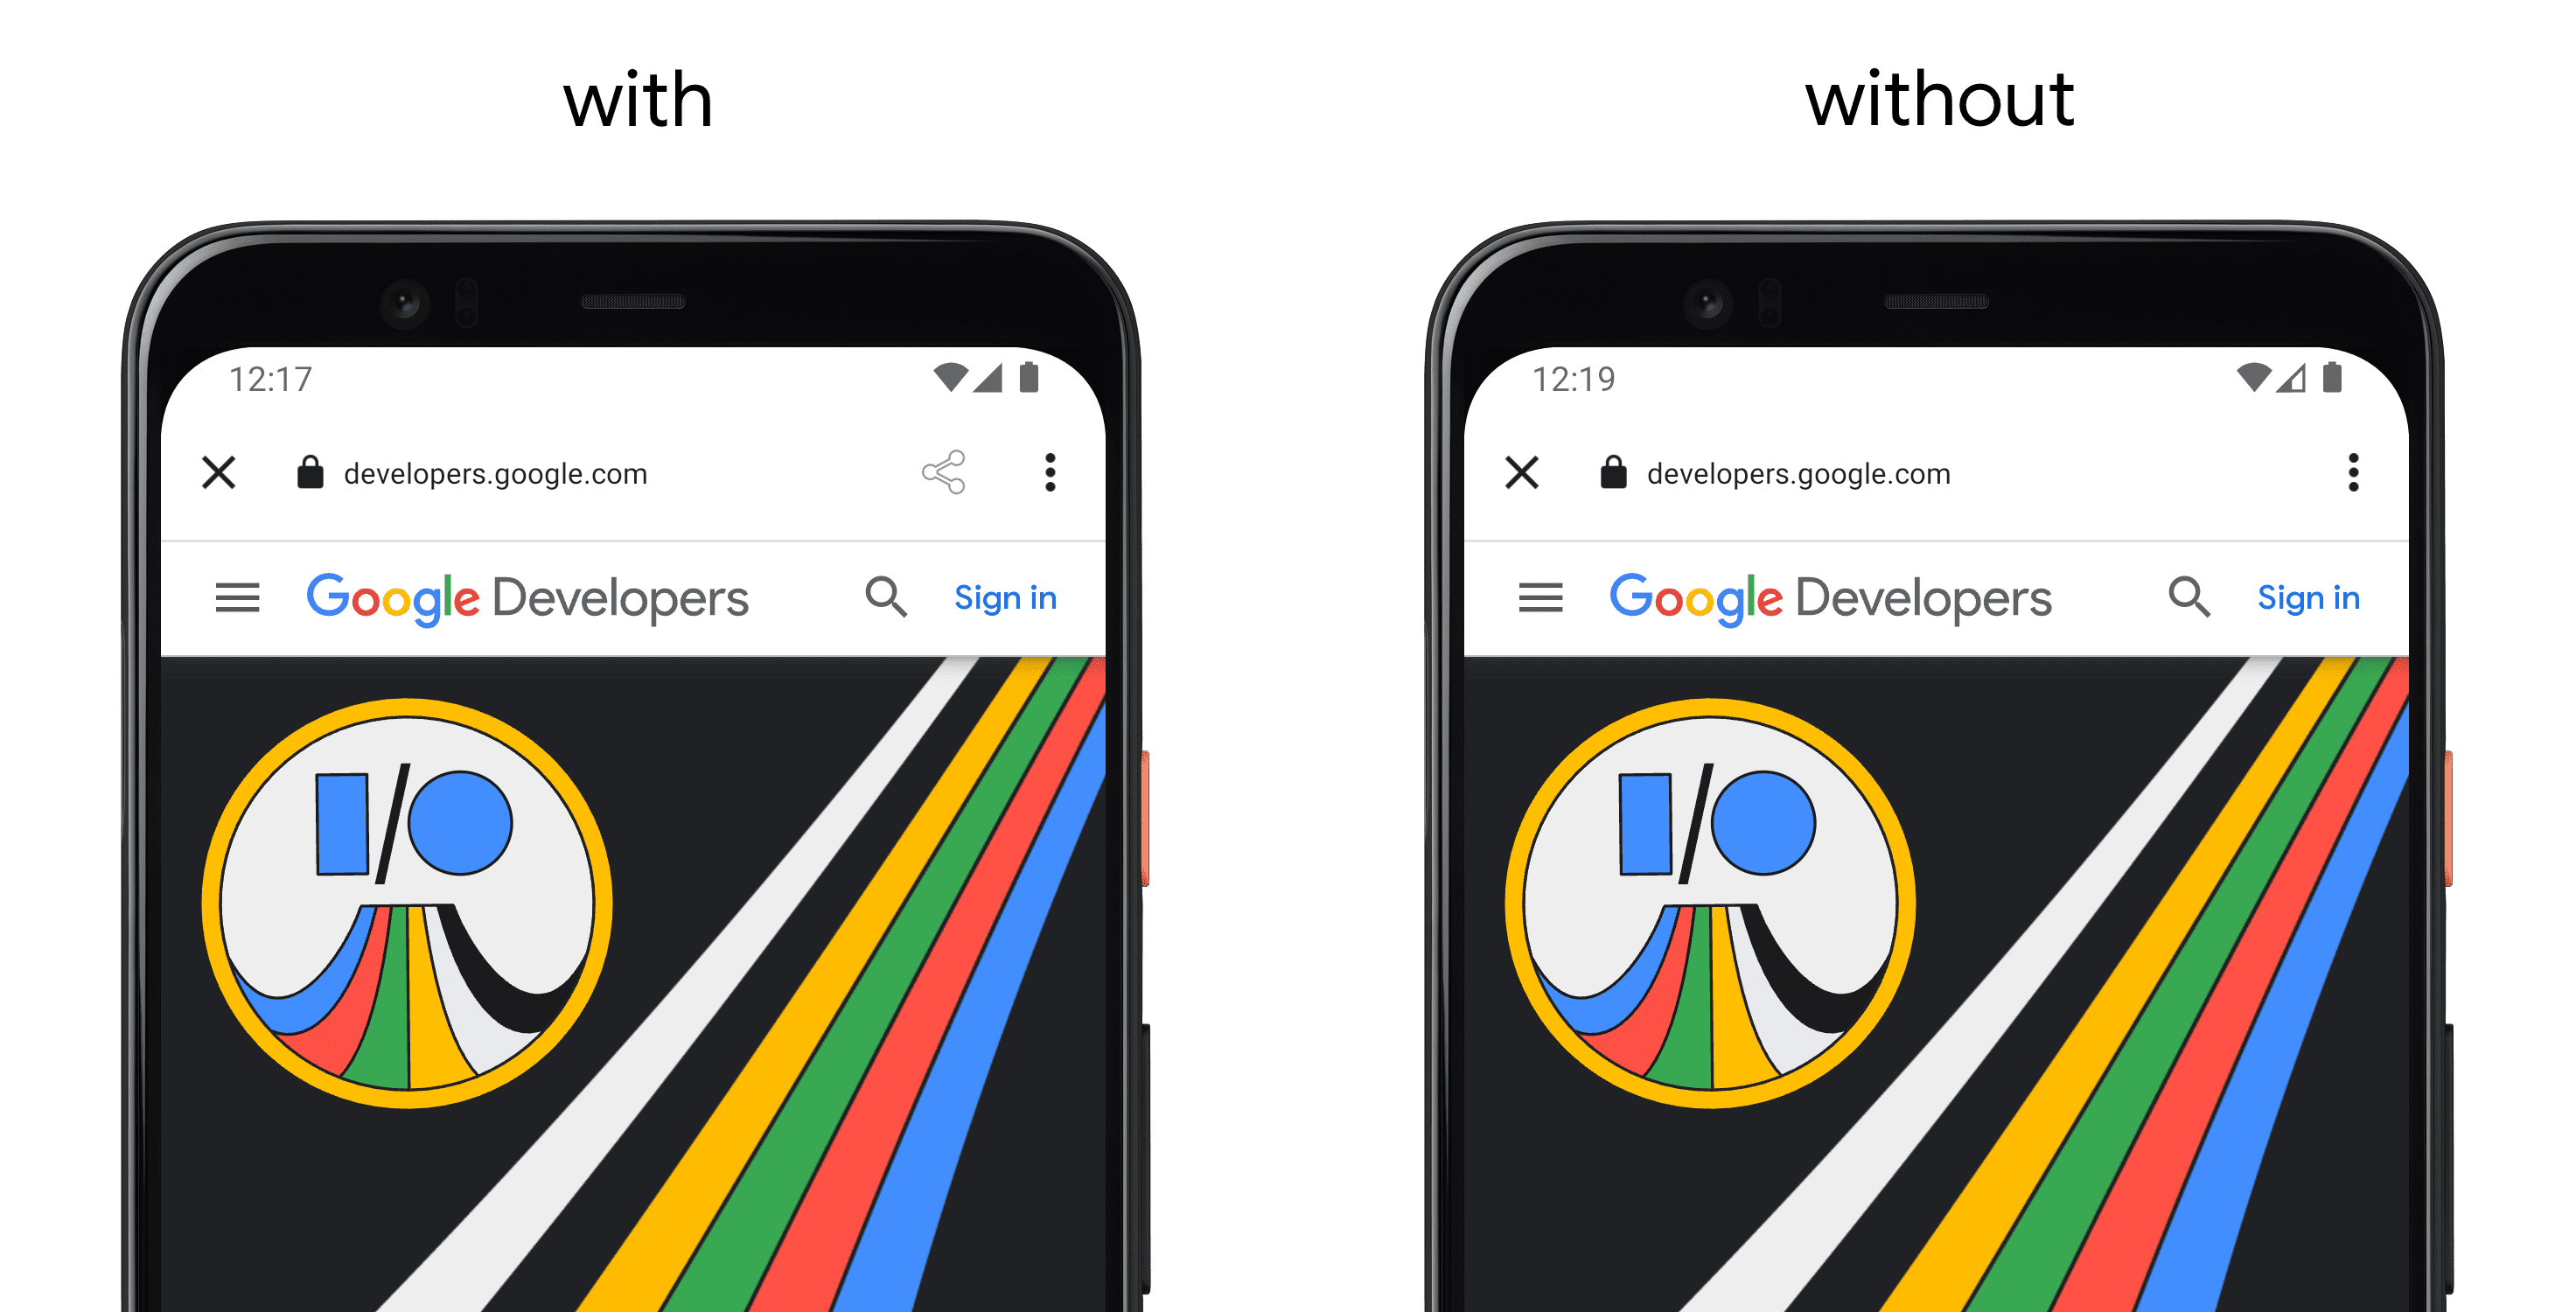 Links ein Smartphone, auf dem eine App mit „setActionButton()()“ angezeigt wird, und auf der rechten ein separates Smartphone ohne API